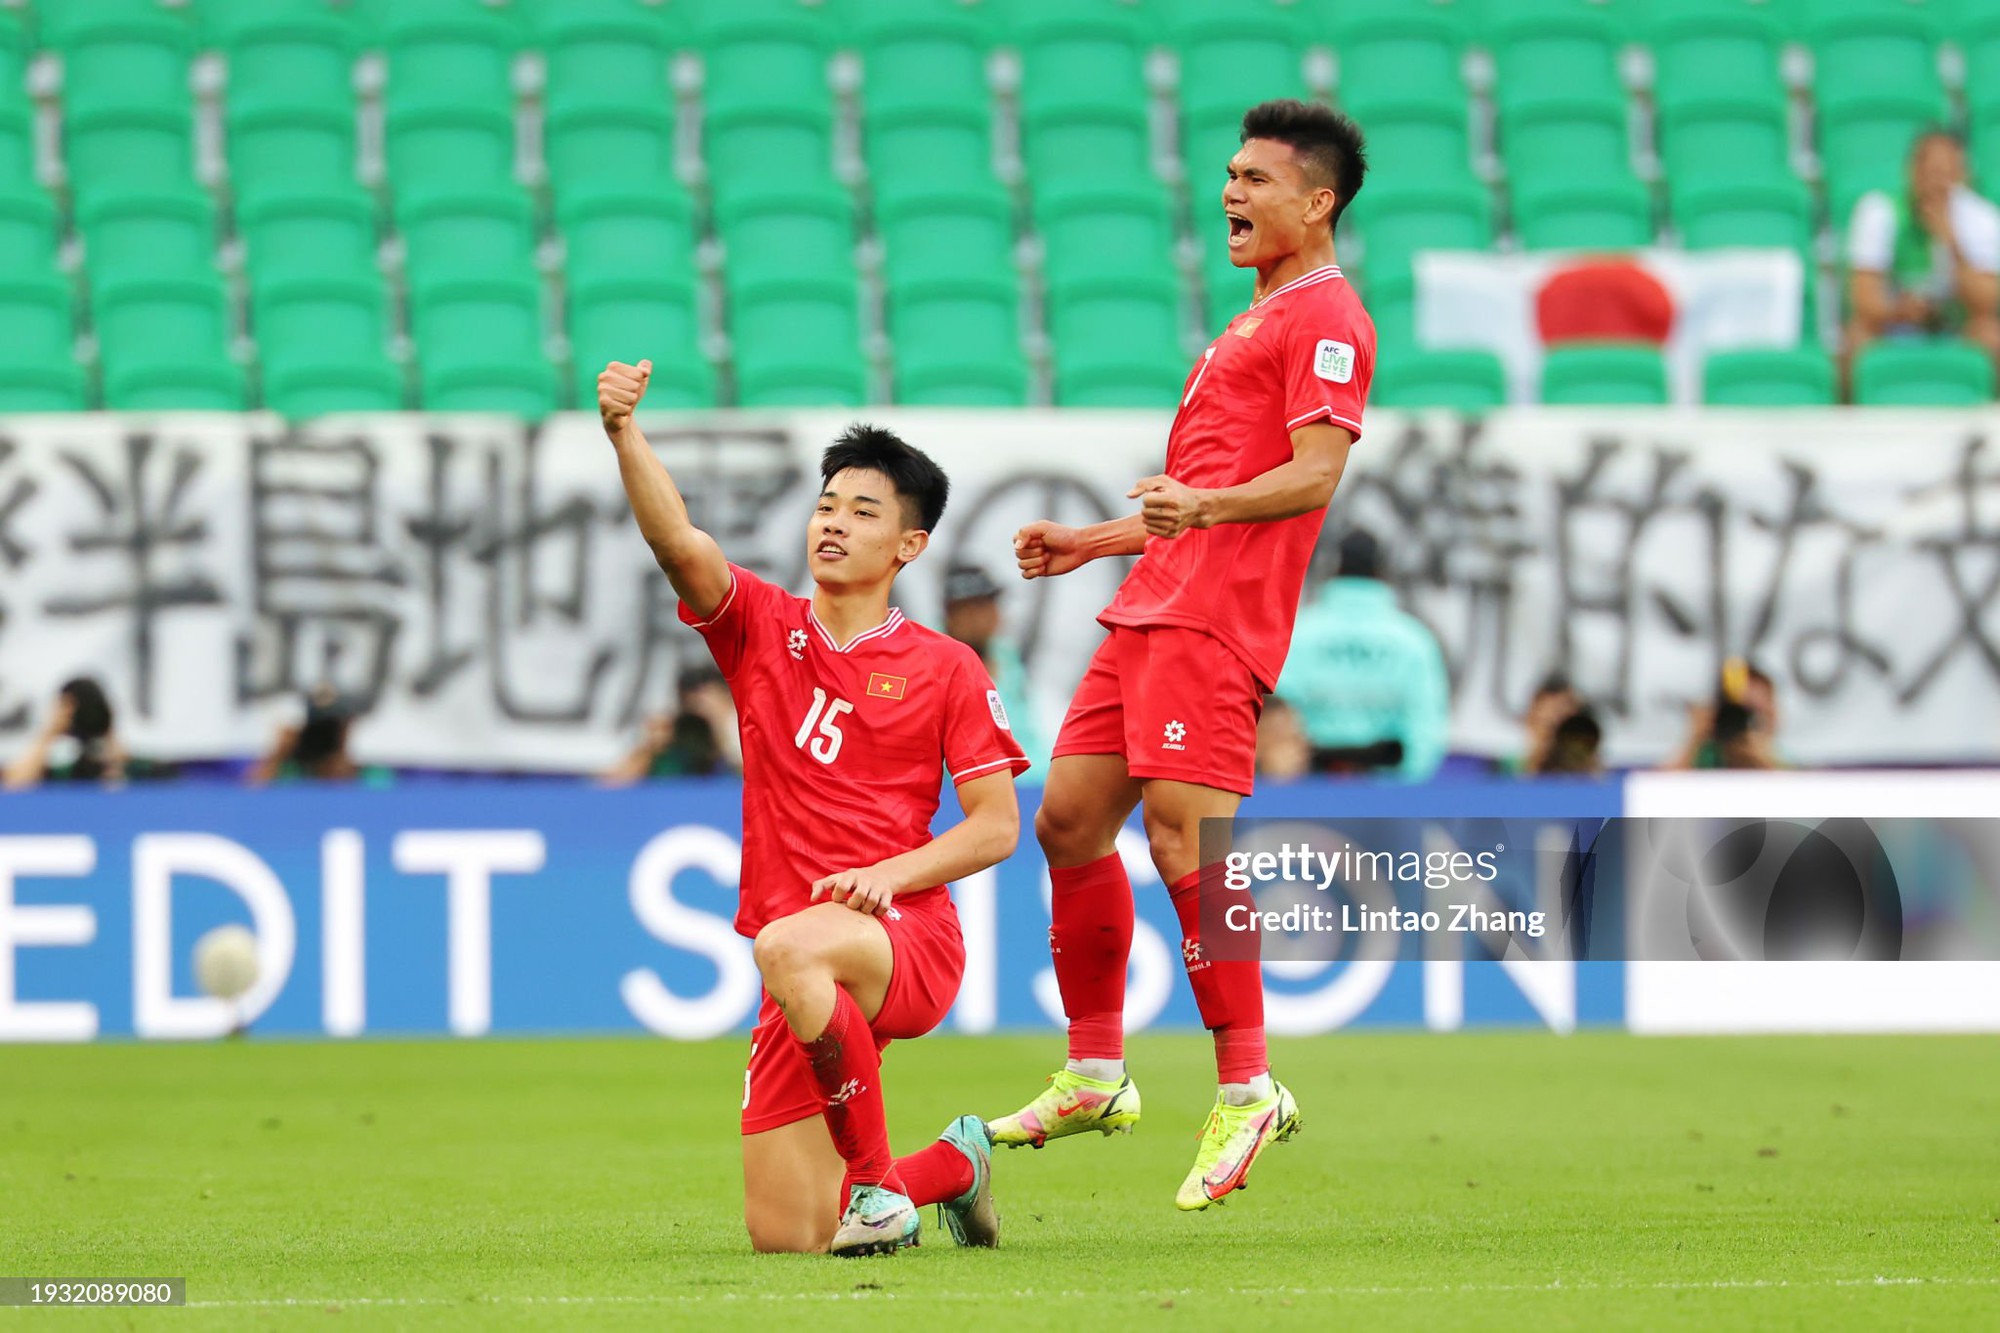 Thấy gì từ trận đội tuyển Việt Nam thua Nhật Bản: Vượt bão hoài nghi, ươm mầm hy vọng - Ảnh 3.